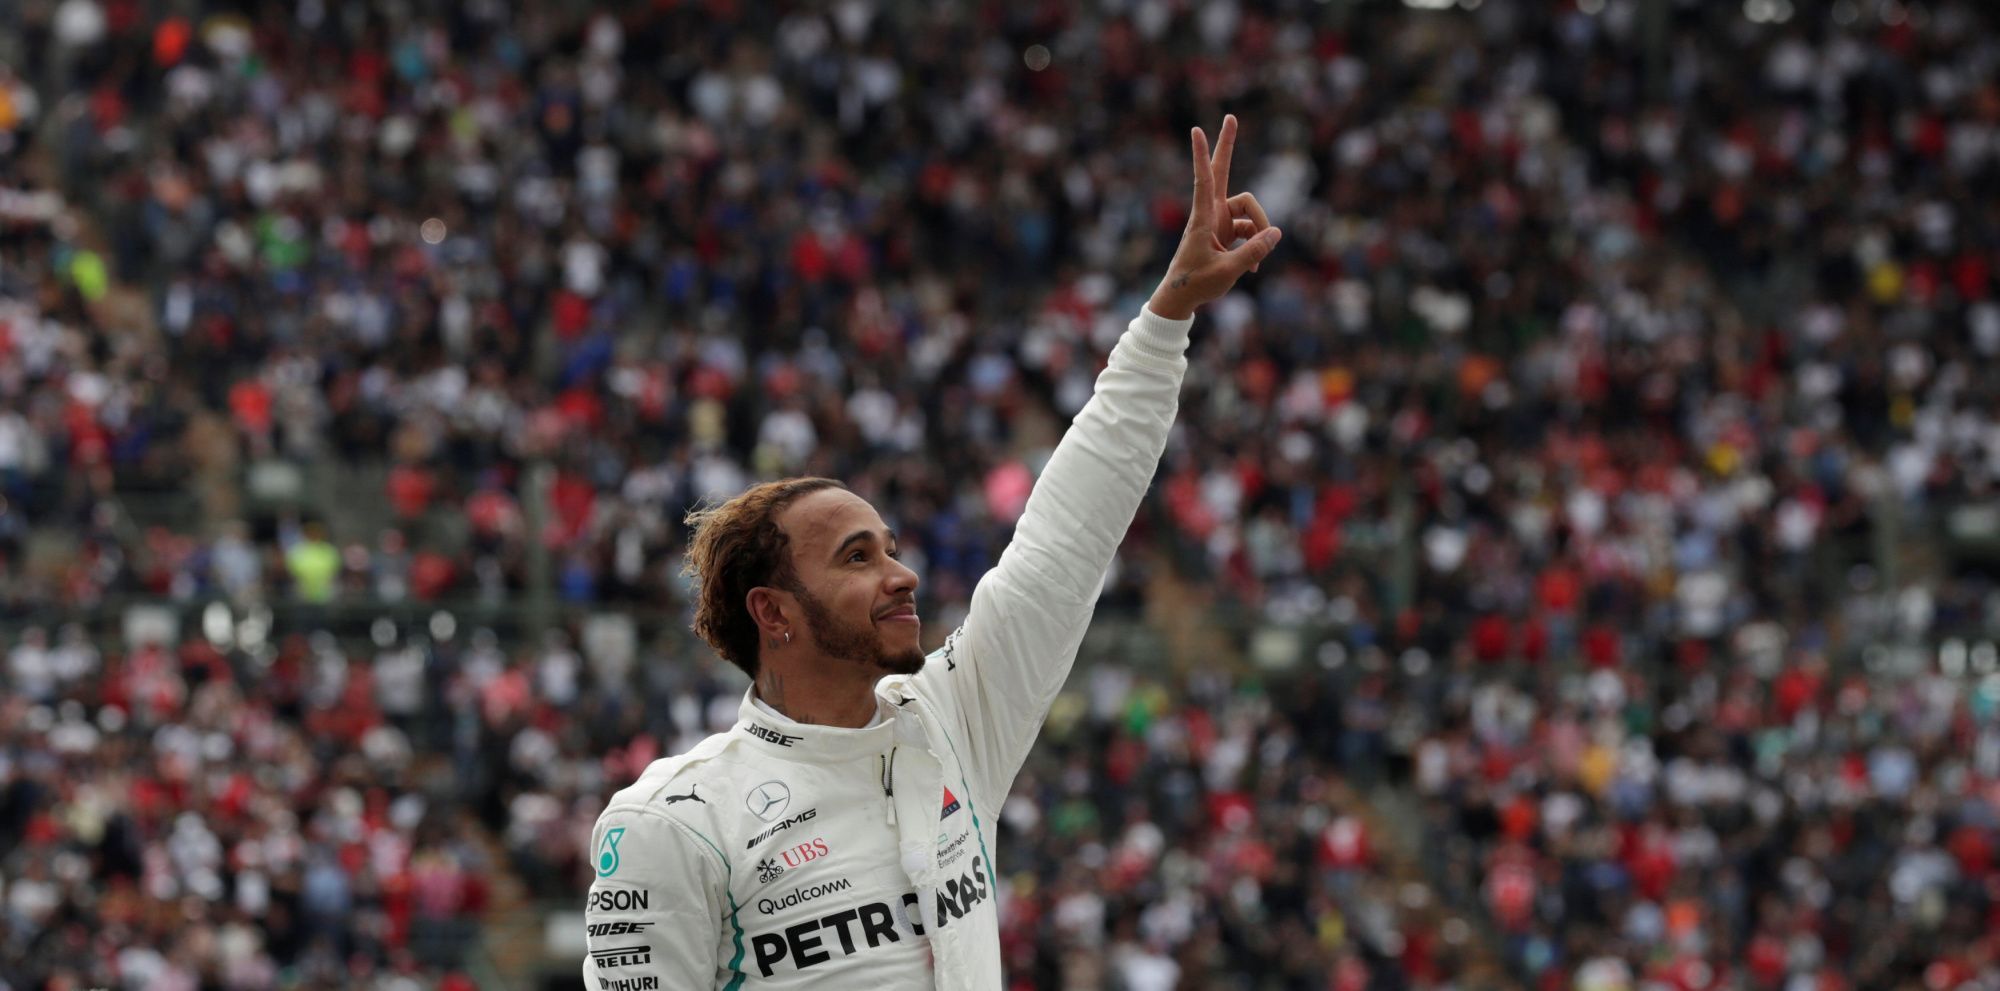 F1, VC Mexika 2018: Lewis Hamilton, Mercedes